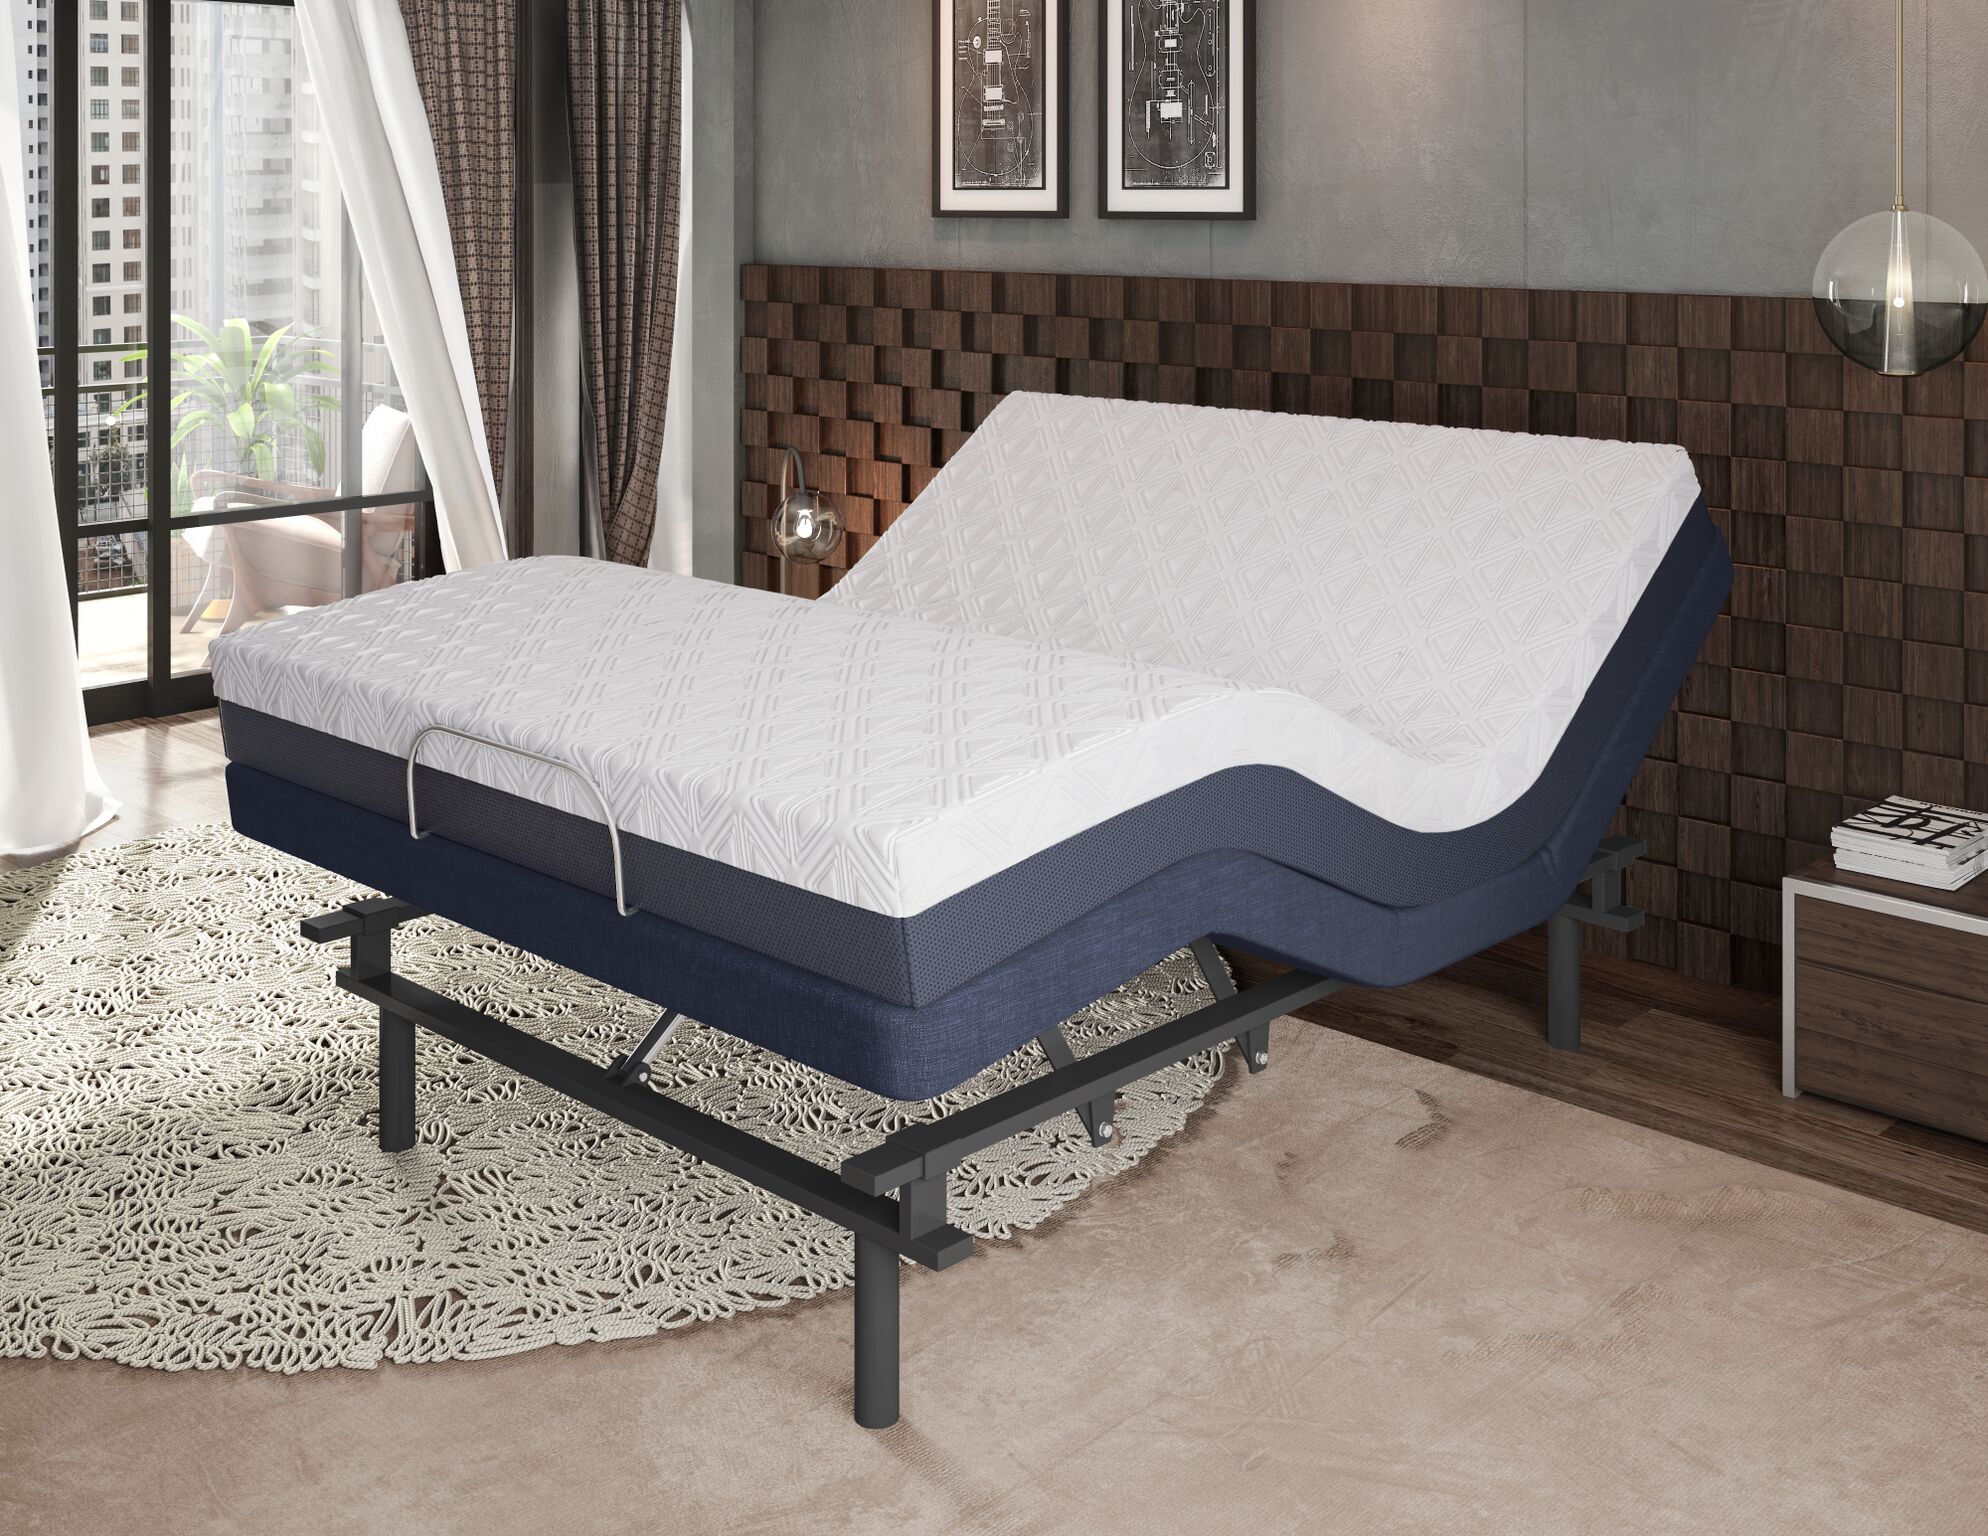 adjustable mattresses queen sized